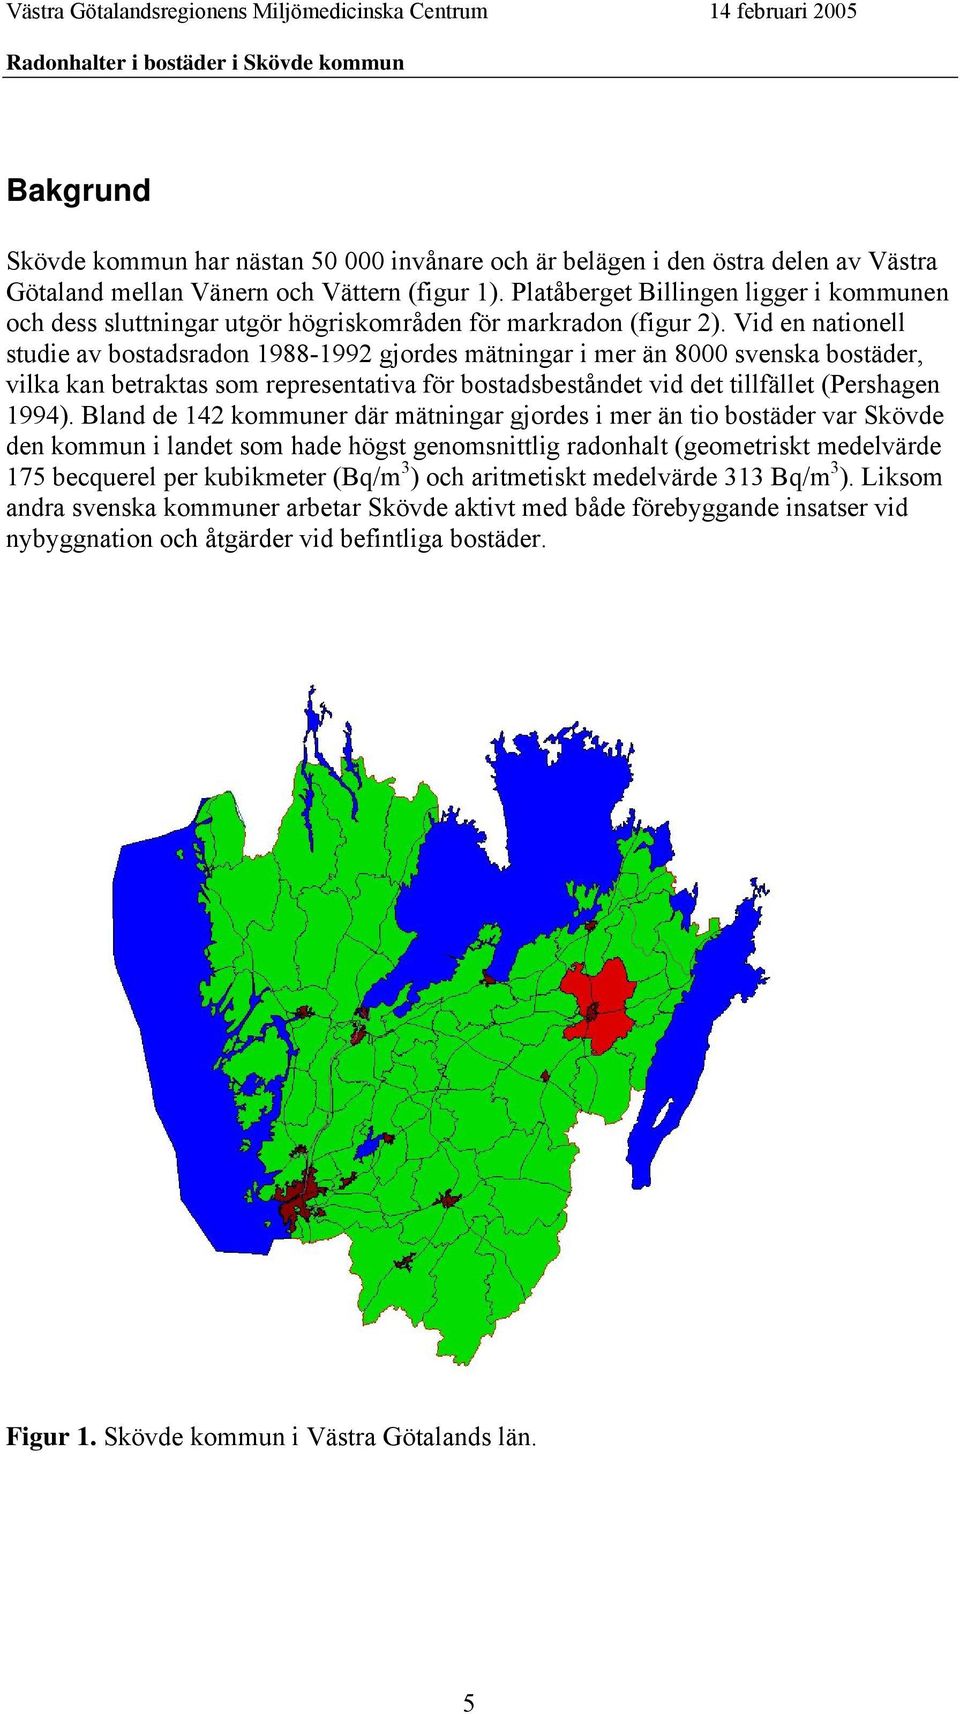 Vid en nationell studie av bostadsradon 1988-1992 gjordes mätningar i mer än 8000 svenska bostäder, vilka kan betraktas som representativa för bostadsbeståndet vid det tillfället (Pershagen 1994).